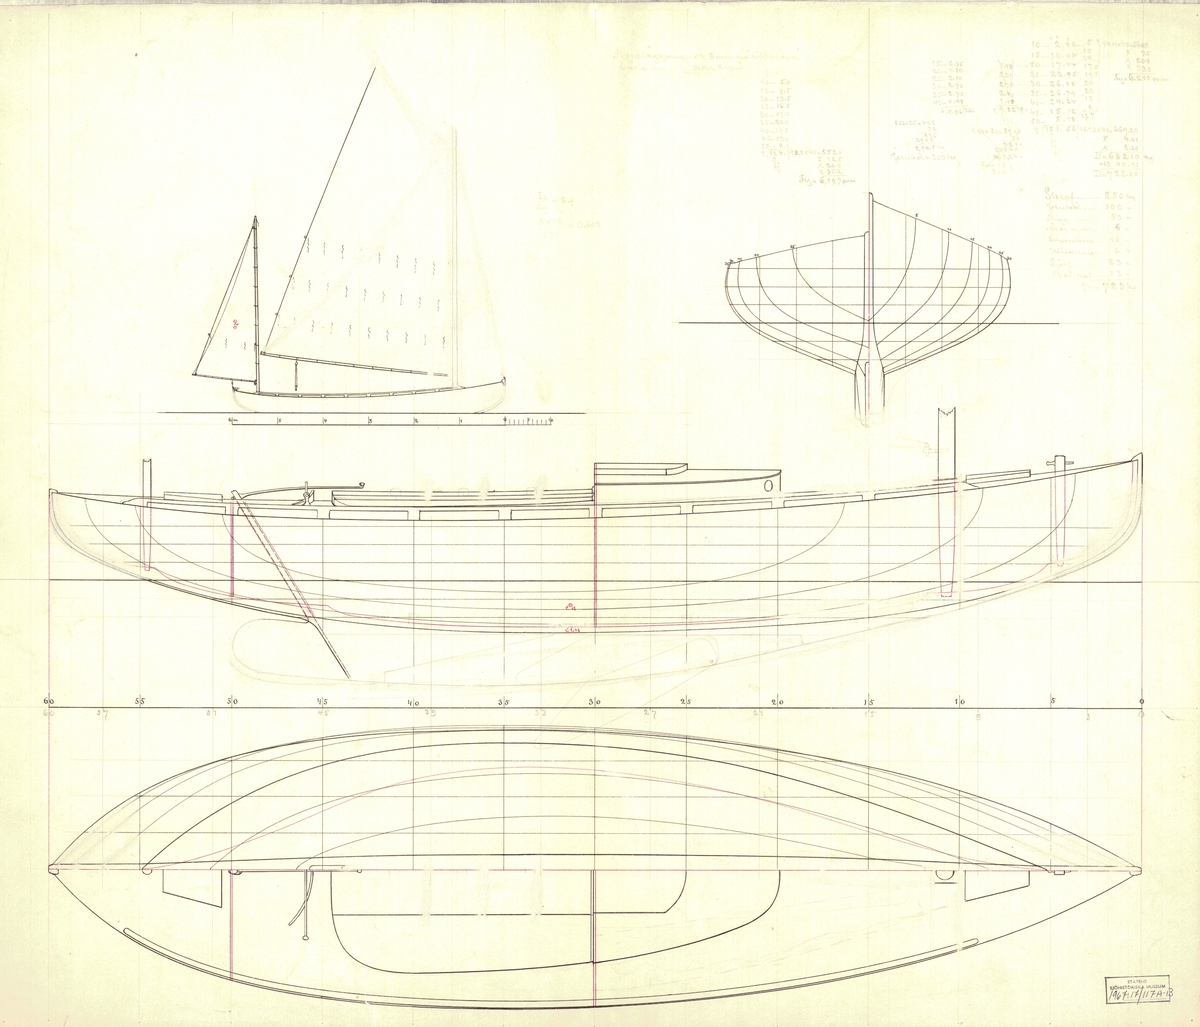 Tvåmastad segelbåt
Spantruta, segel-, profil- och linjeritning